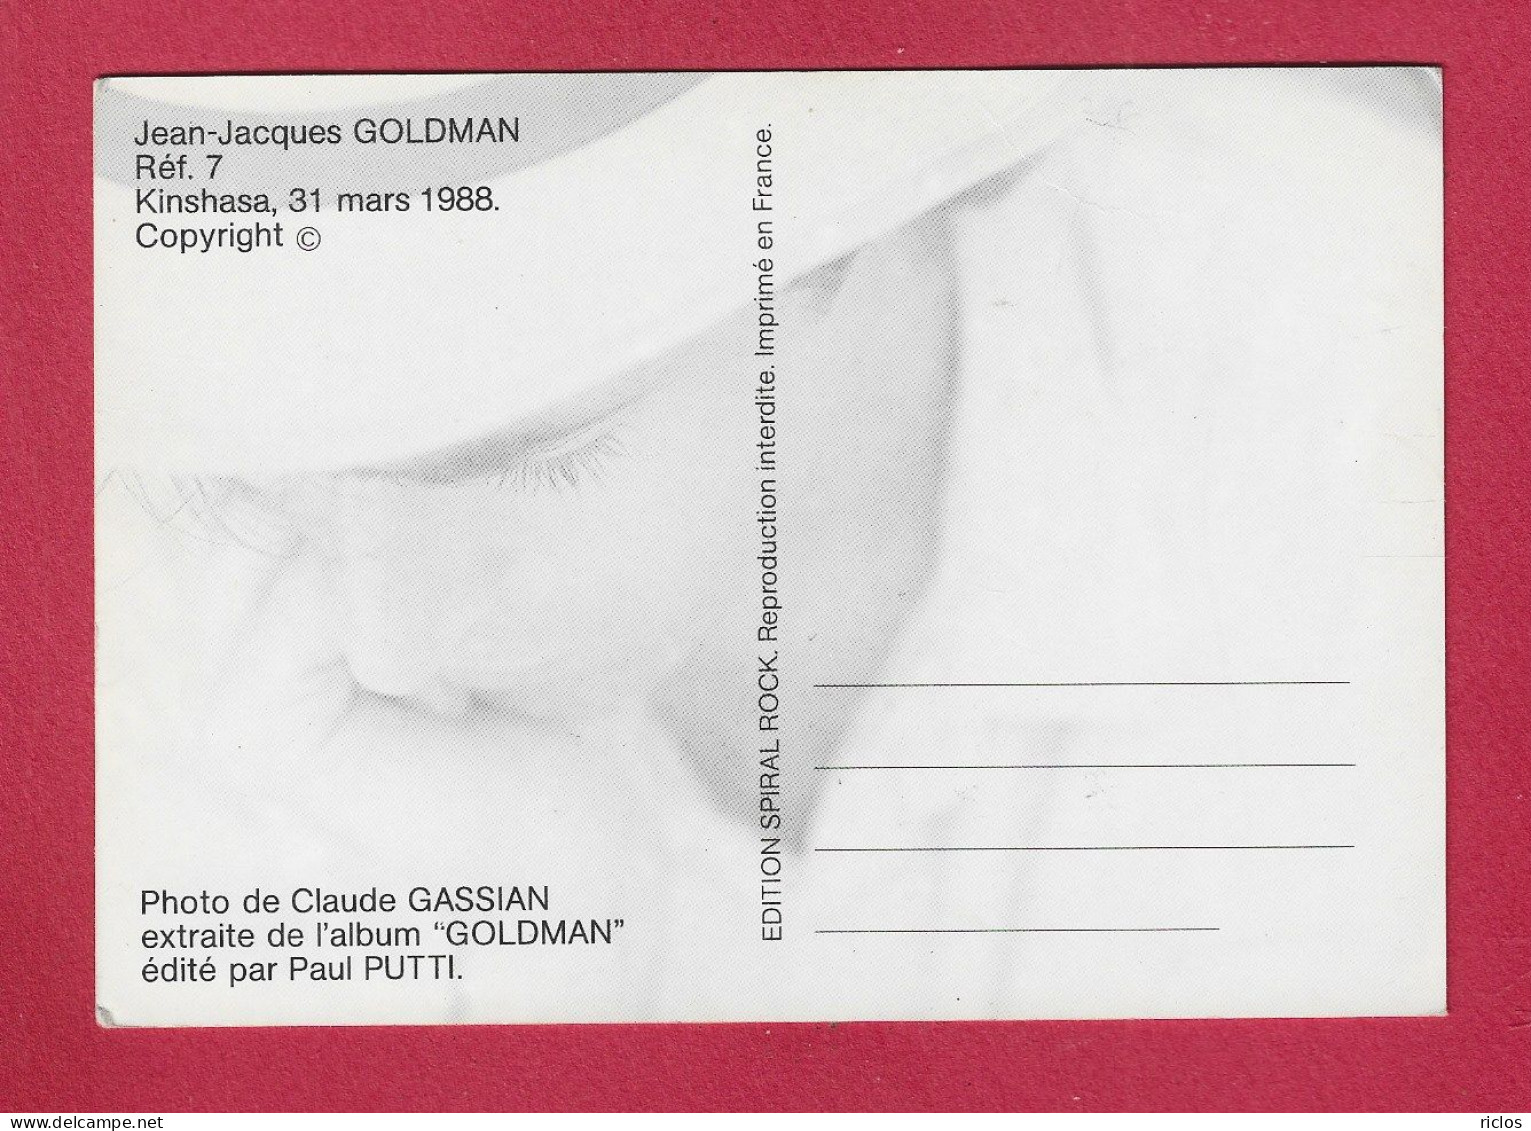 GOLDMAN JEAN-JACQUES - KINSHASA 31 MARS 1988 - Artisti